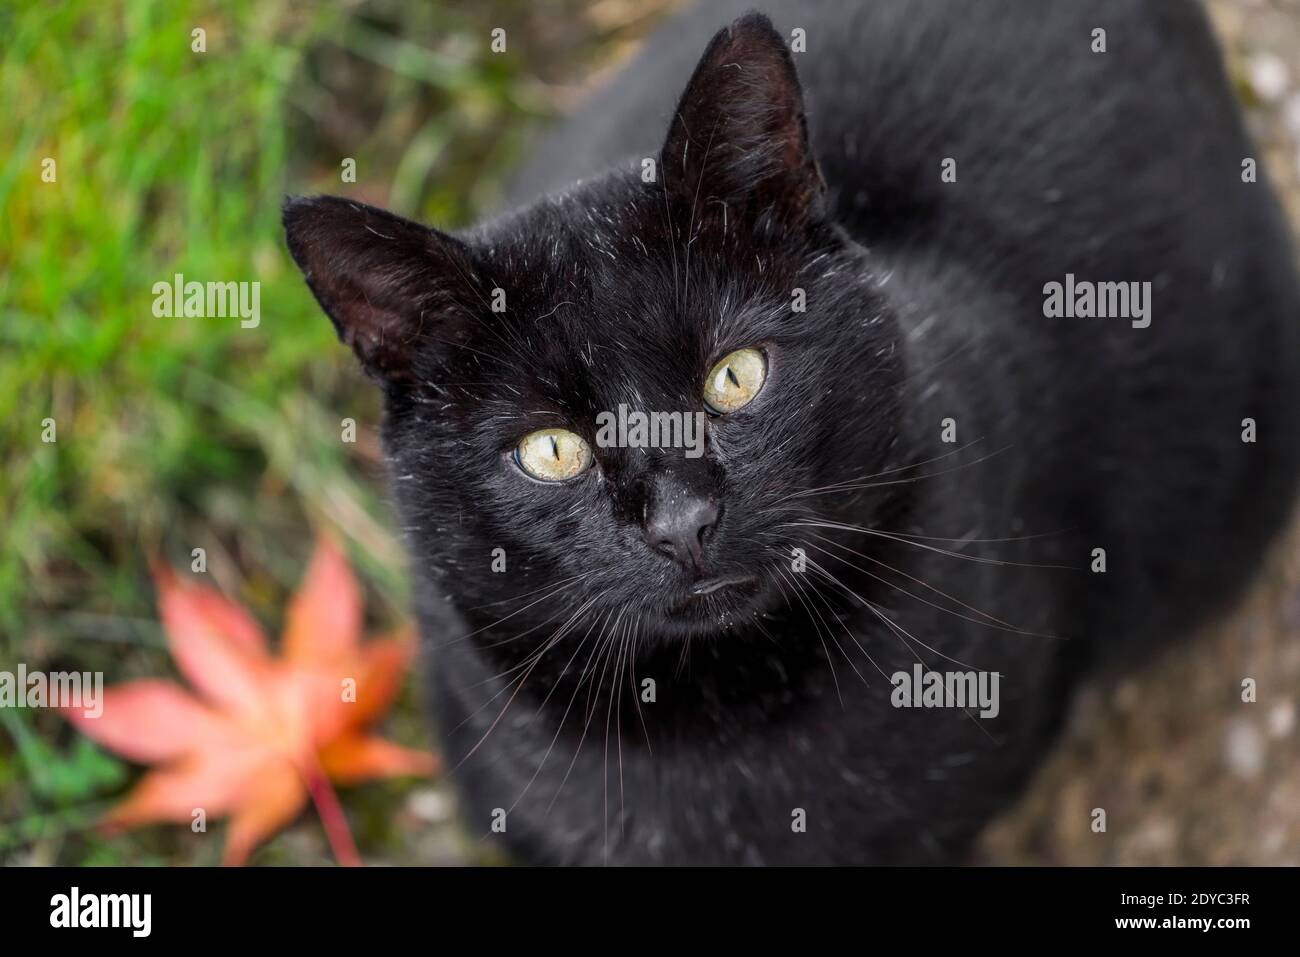 black cat, Felis catus, looking upward, Stock Photo